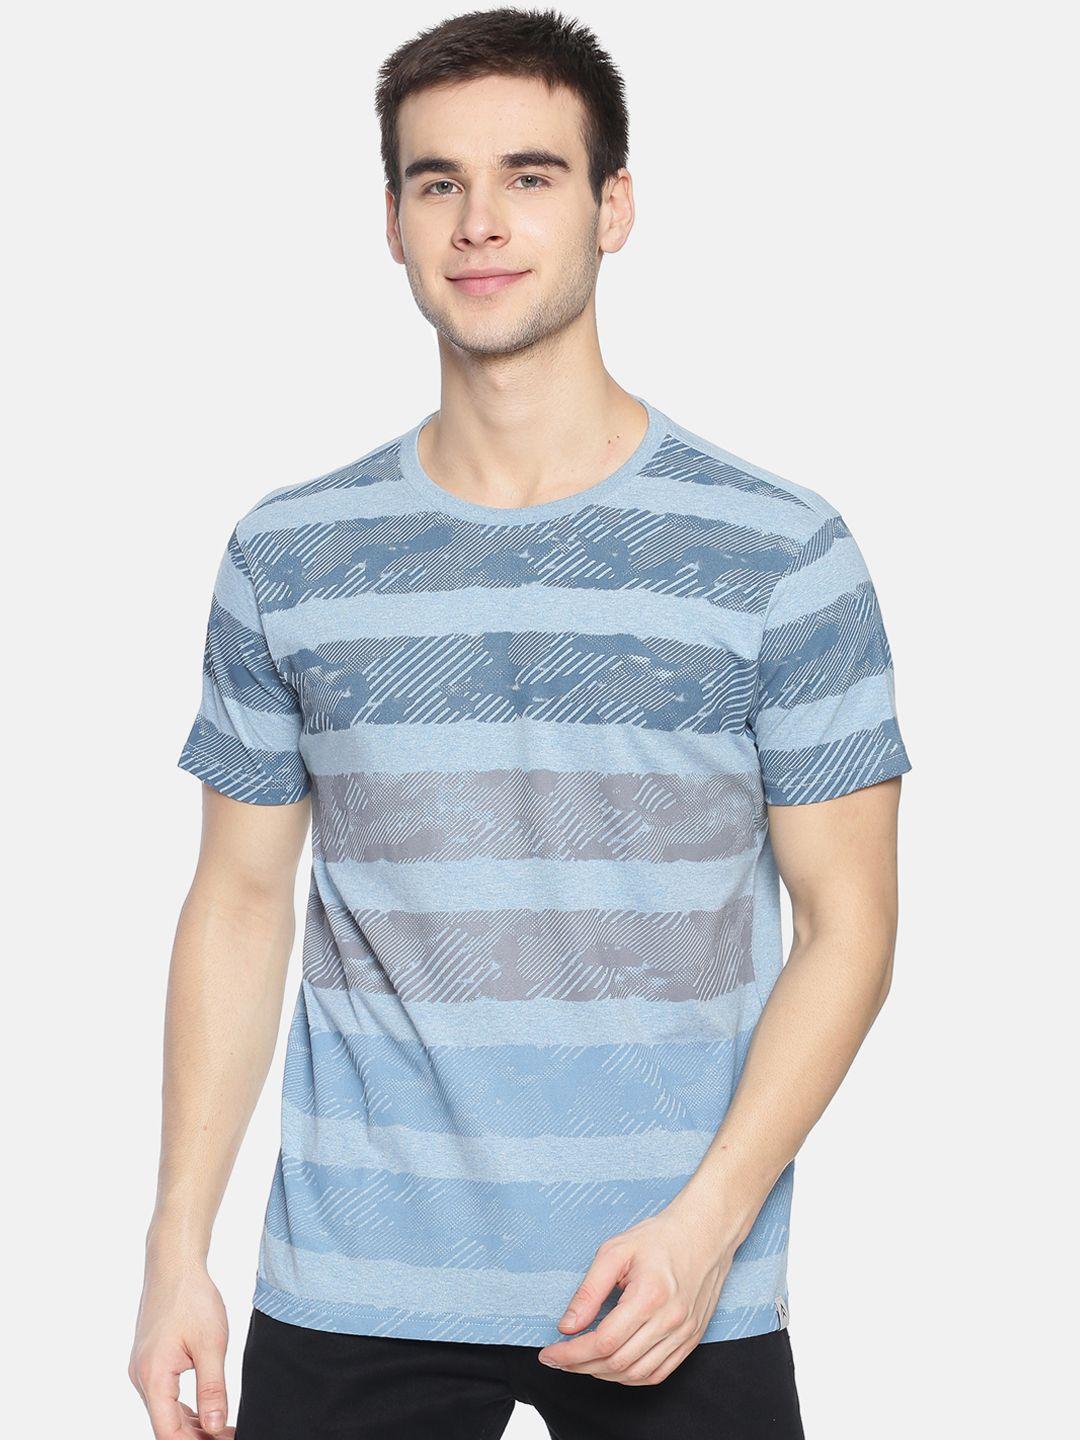 steenbok men blue  grey striped round neck pure cotton t-shirt